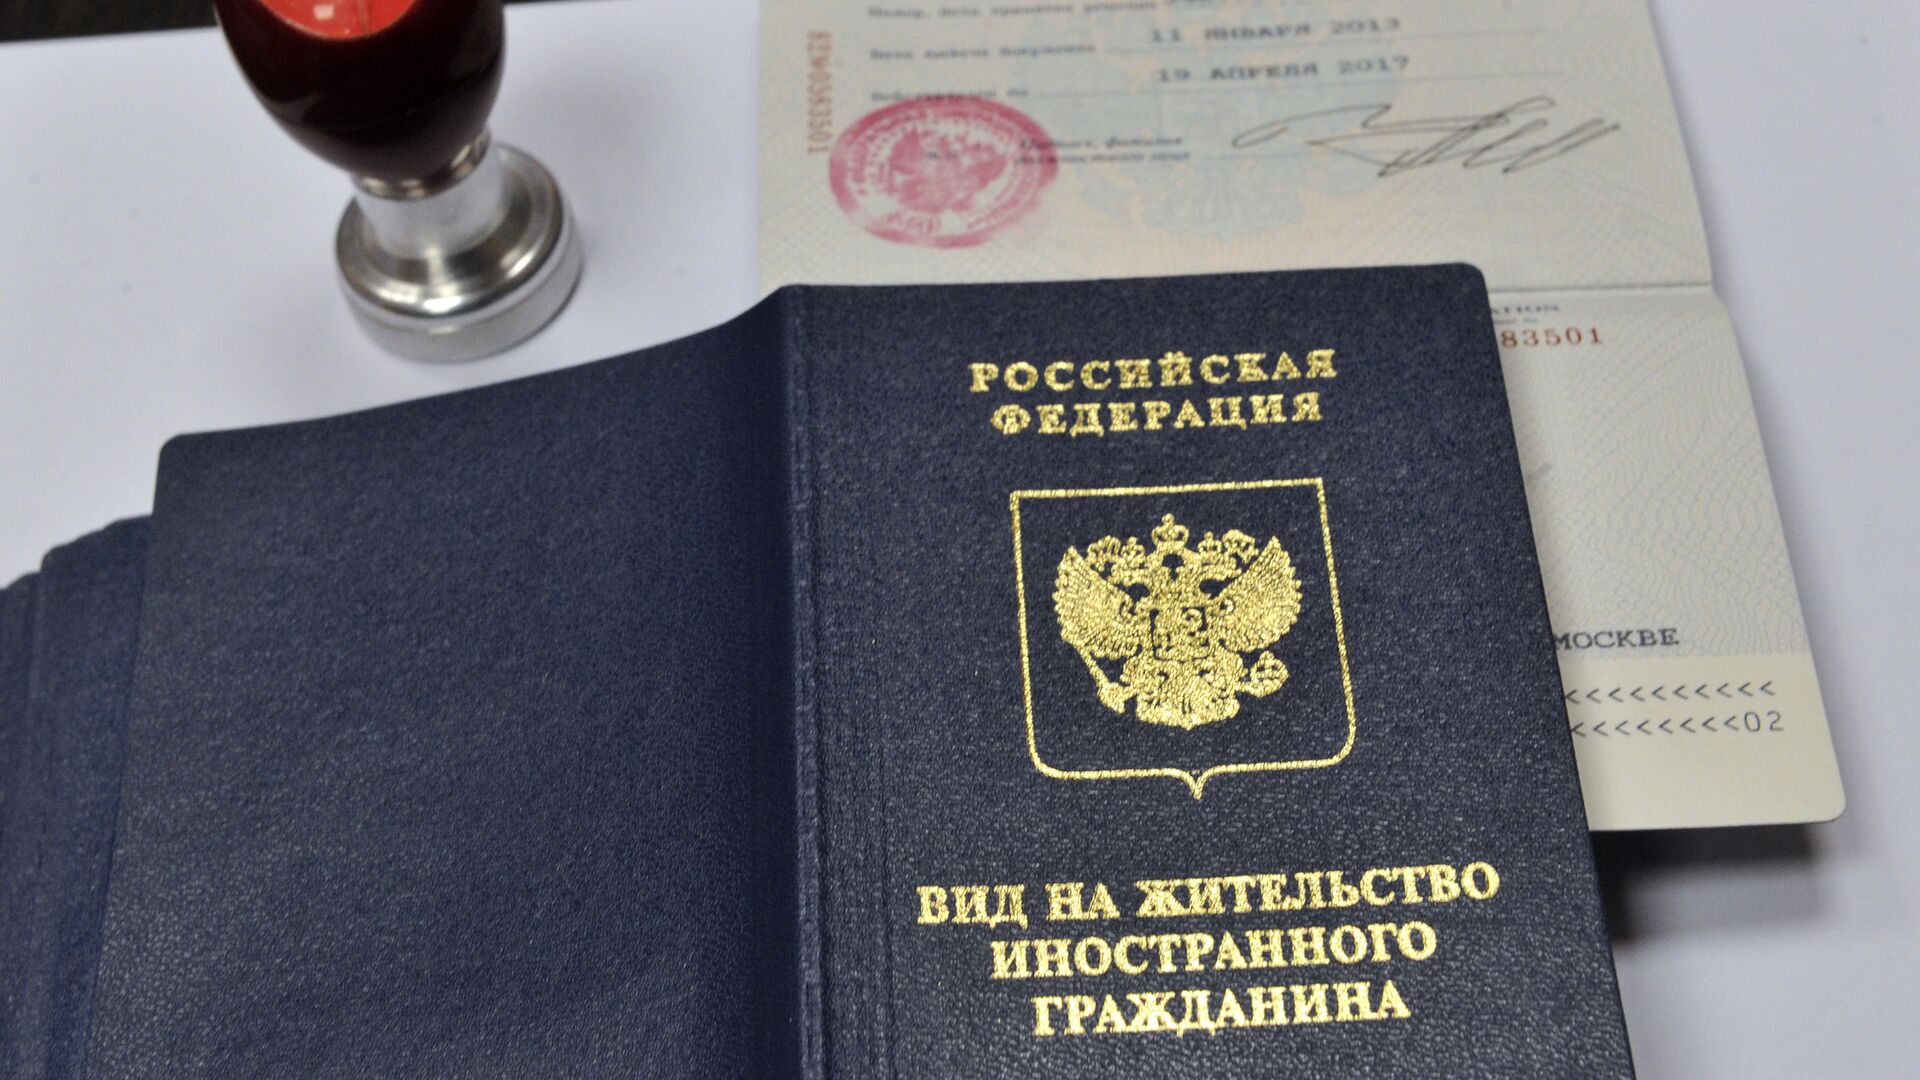 Вид на жительство иностранного гражданина в отделении по вопросам гражданства РФ - Sputnik Молдова, 1920, 16.12.2021